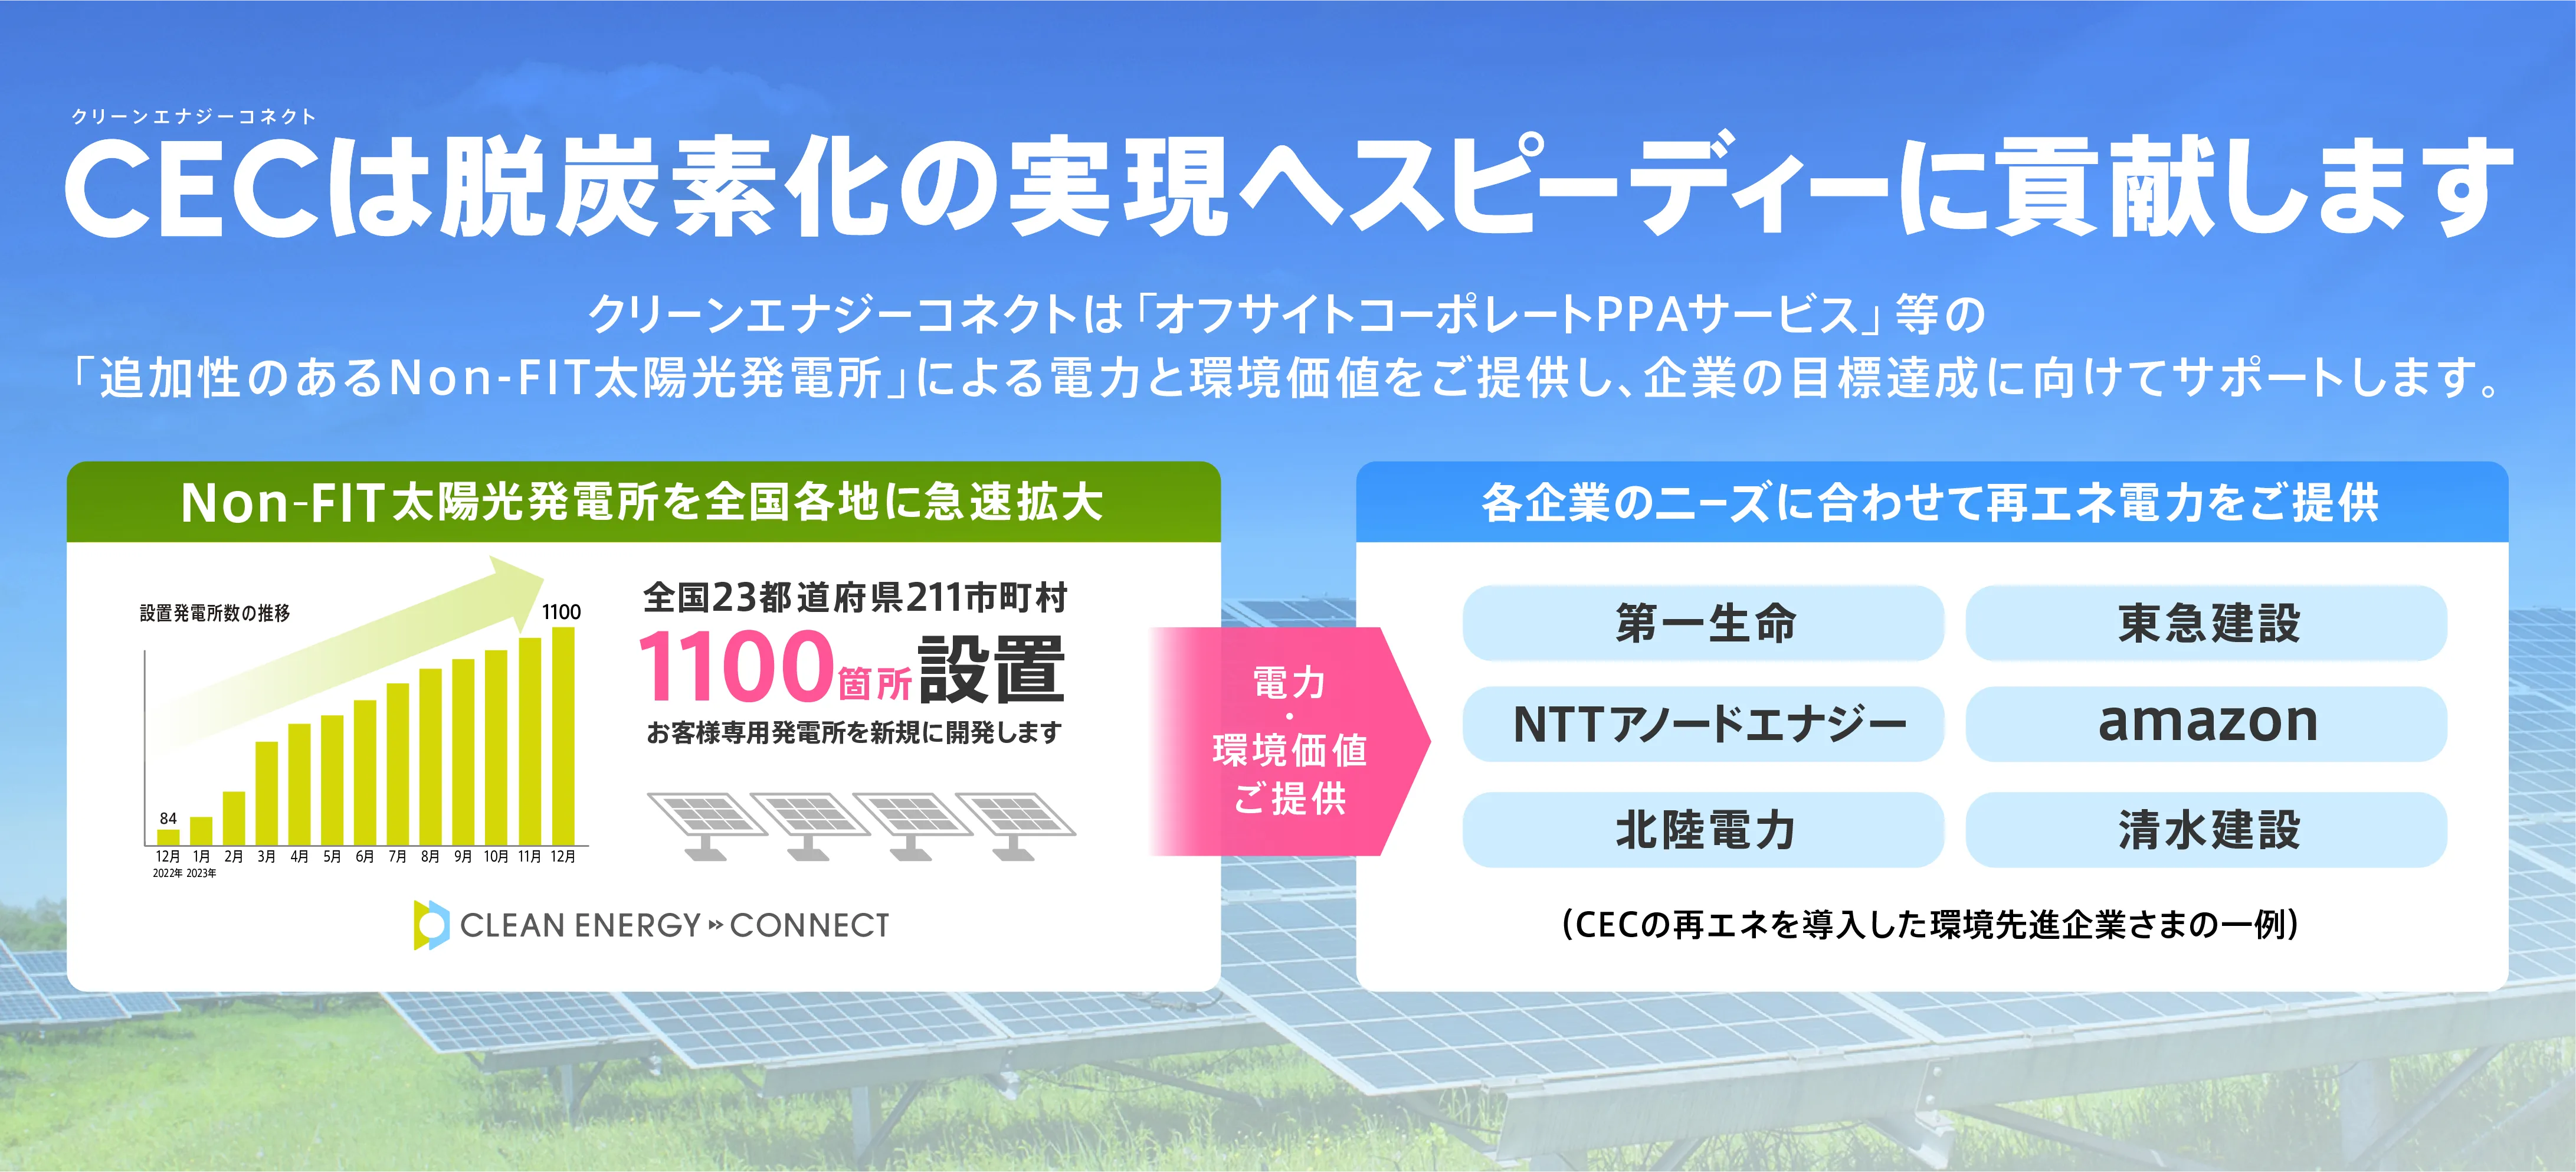 CECは、非FITの発電所を開発する事で再エネ賦課金（多くの方が電力会社に支払っているお金）を使わずに、日本の脱炭素化を支援しています。